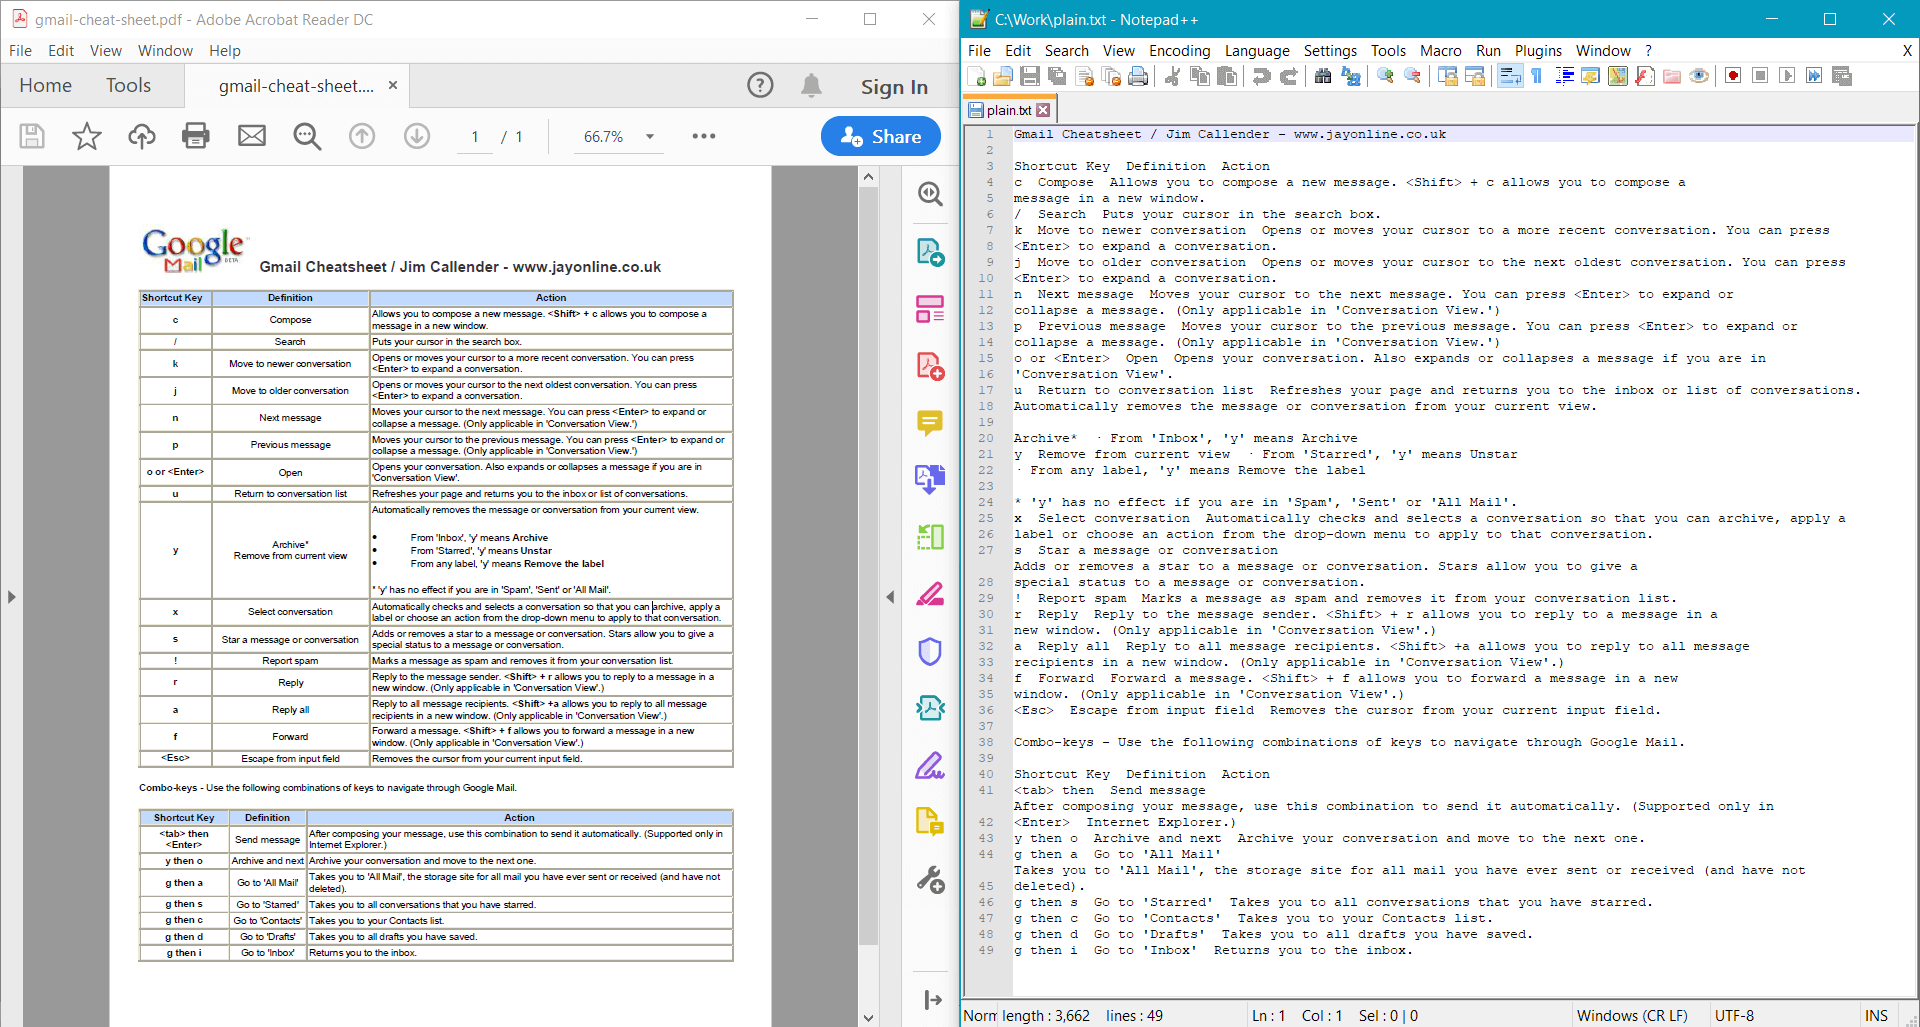 Ergebnis der Nur-Text-Extraktion aus einem PDF-Dokument in C# .NET